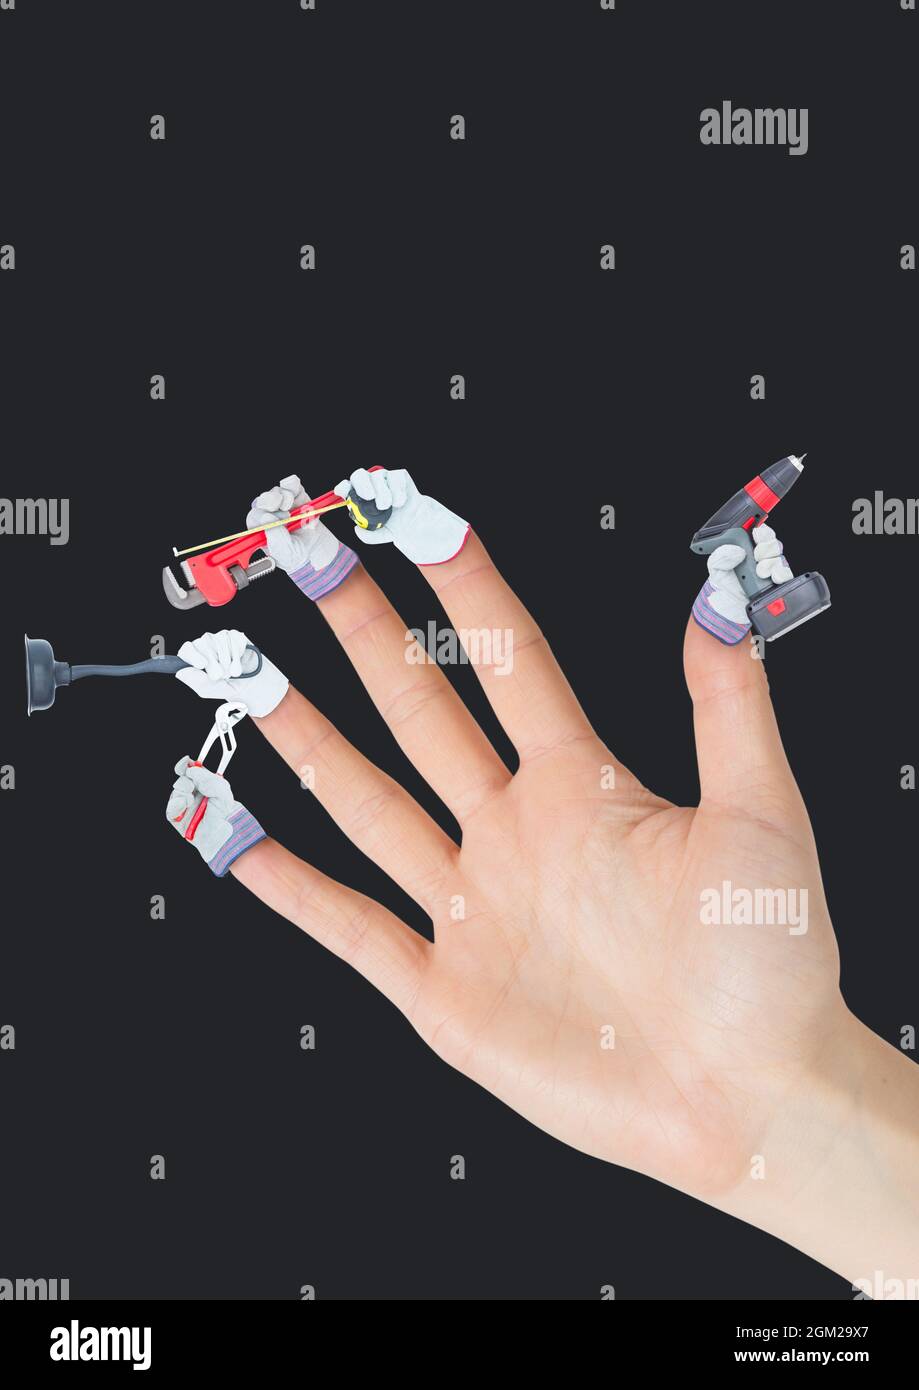 Plusieurs appareils de nettoyage sur les doigts d'une main contre un fond noir Banque D'Images